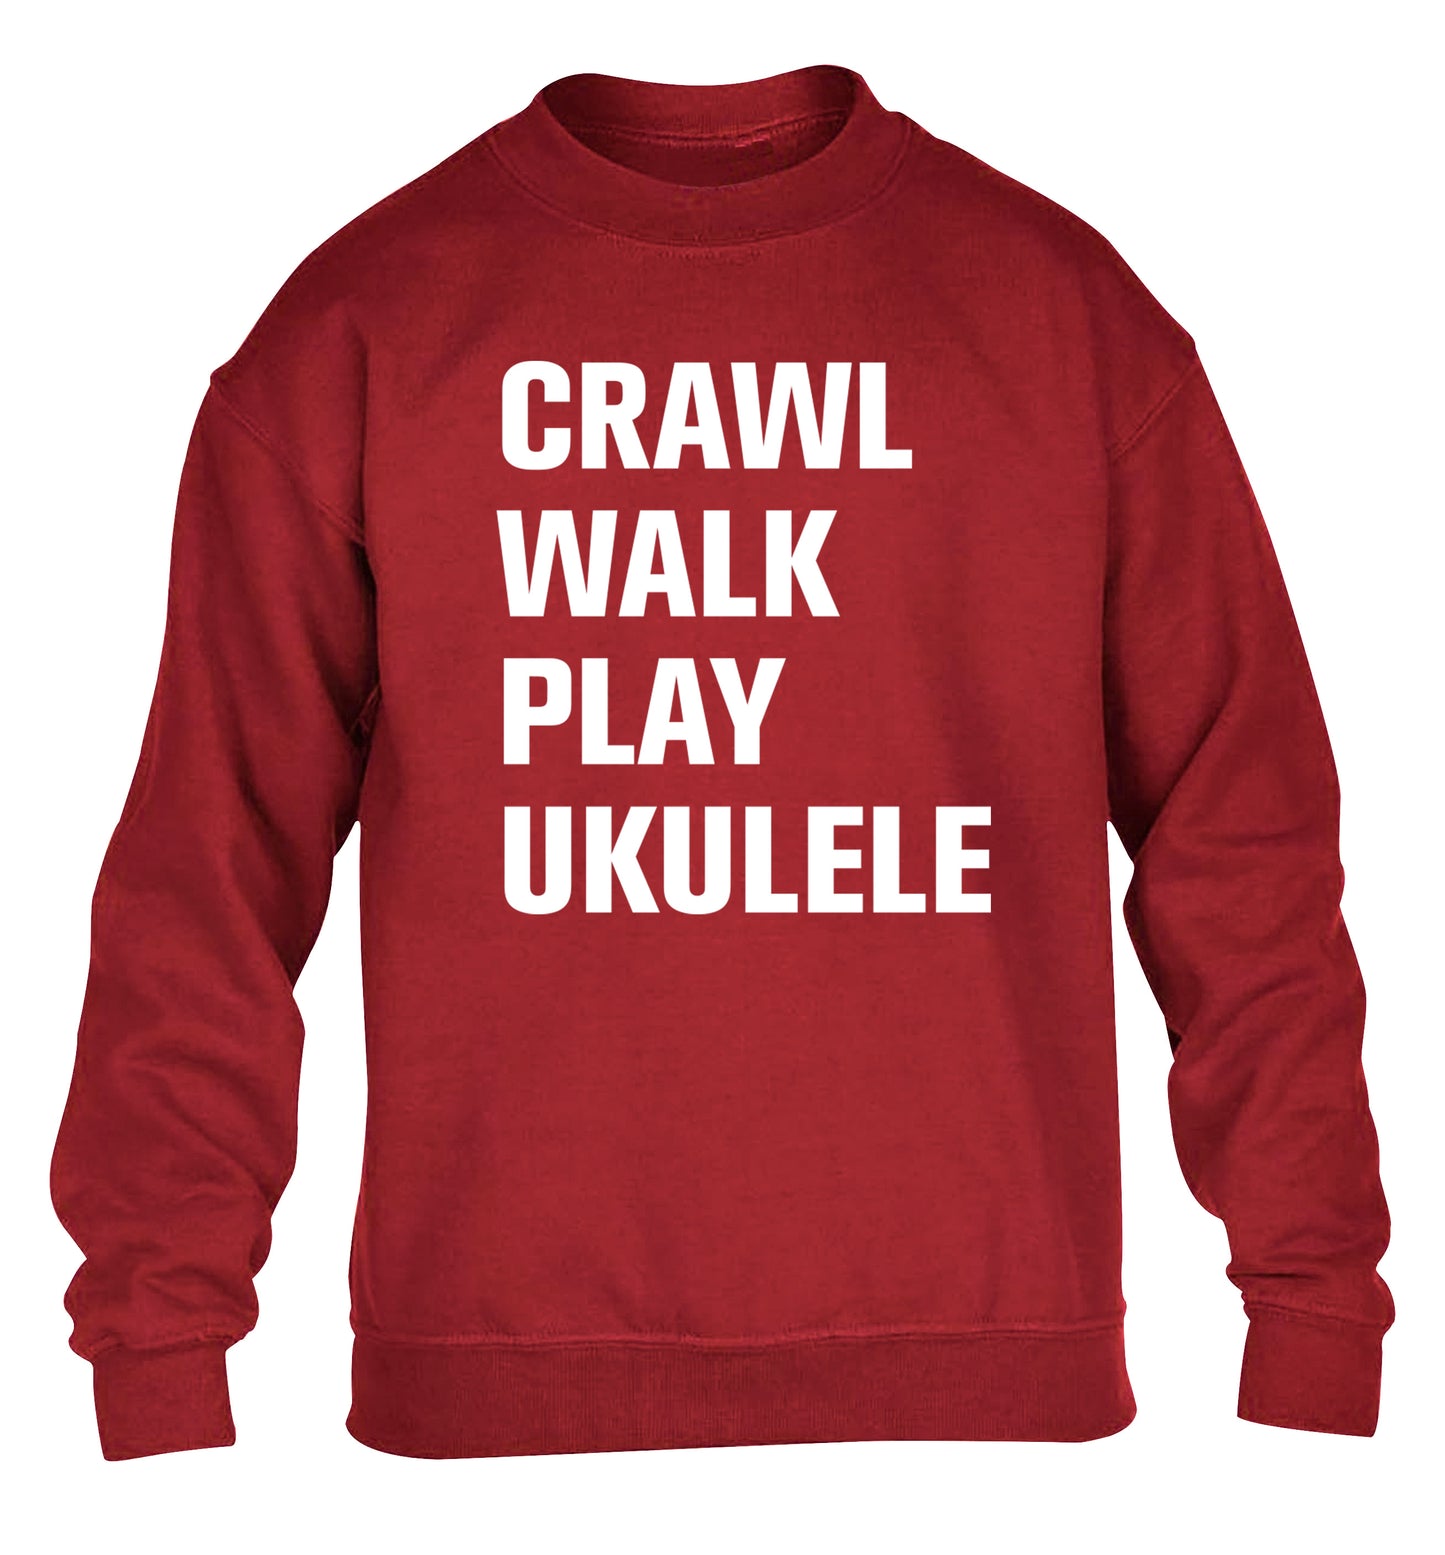 Crawl walk play ukulele children's grey sweater 12-13 Years